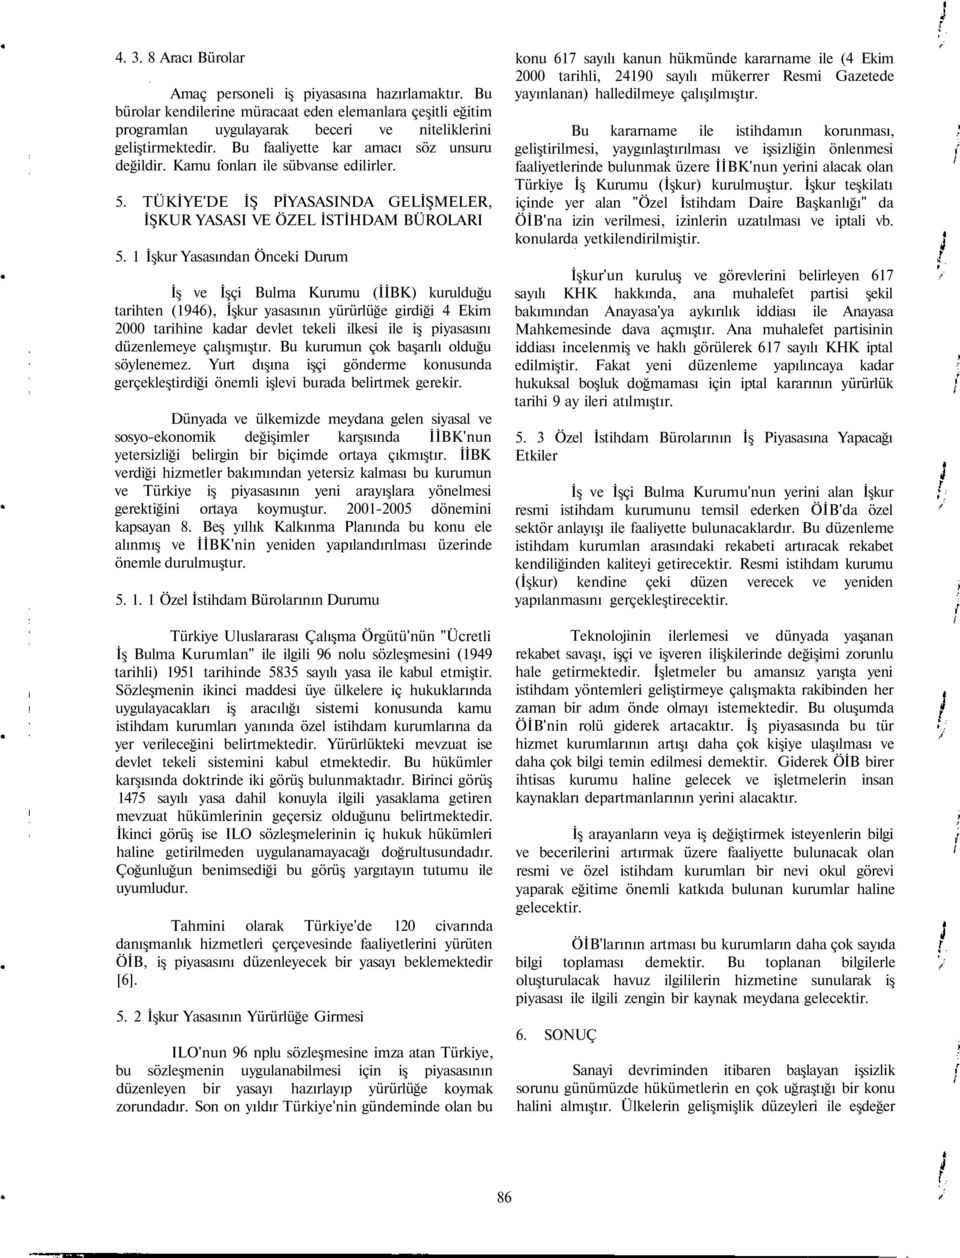 1 İşkur Yasasından Önceki Durum İş ve İşçi Bulma Kurumu (İİBK) kurulduğu tarihten (1946), İşkur yasasının yürürlüğe girdiği 4 Ekim 2000 tarihine kadar devlet tekeli ilkesi ile iş piyasasını